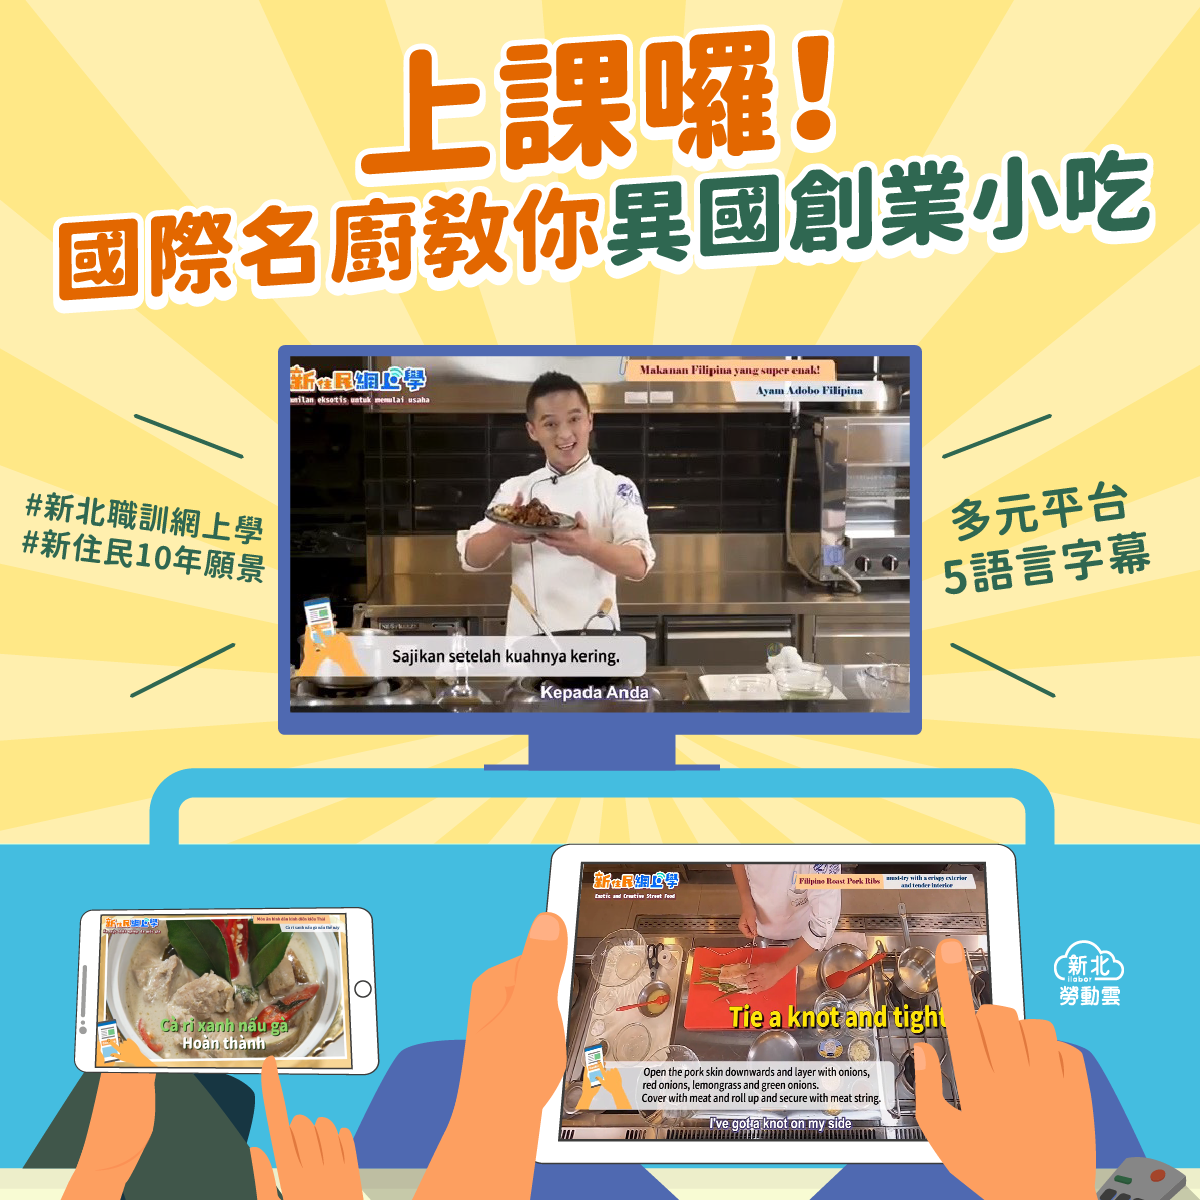 Pusat Pelatihan Kejuruan Pemerintah Kota New Taipei telah membuat kursus audio-visual "Pembelajaran Online Penduduk Baru". Sumber: Biro Tenaga Kerja New Taipei